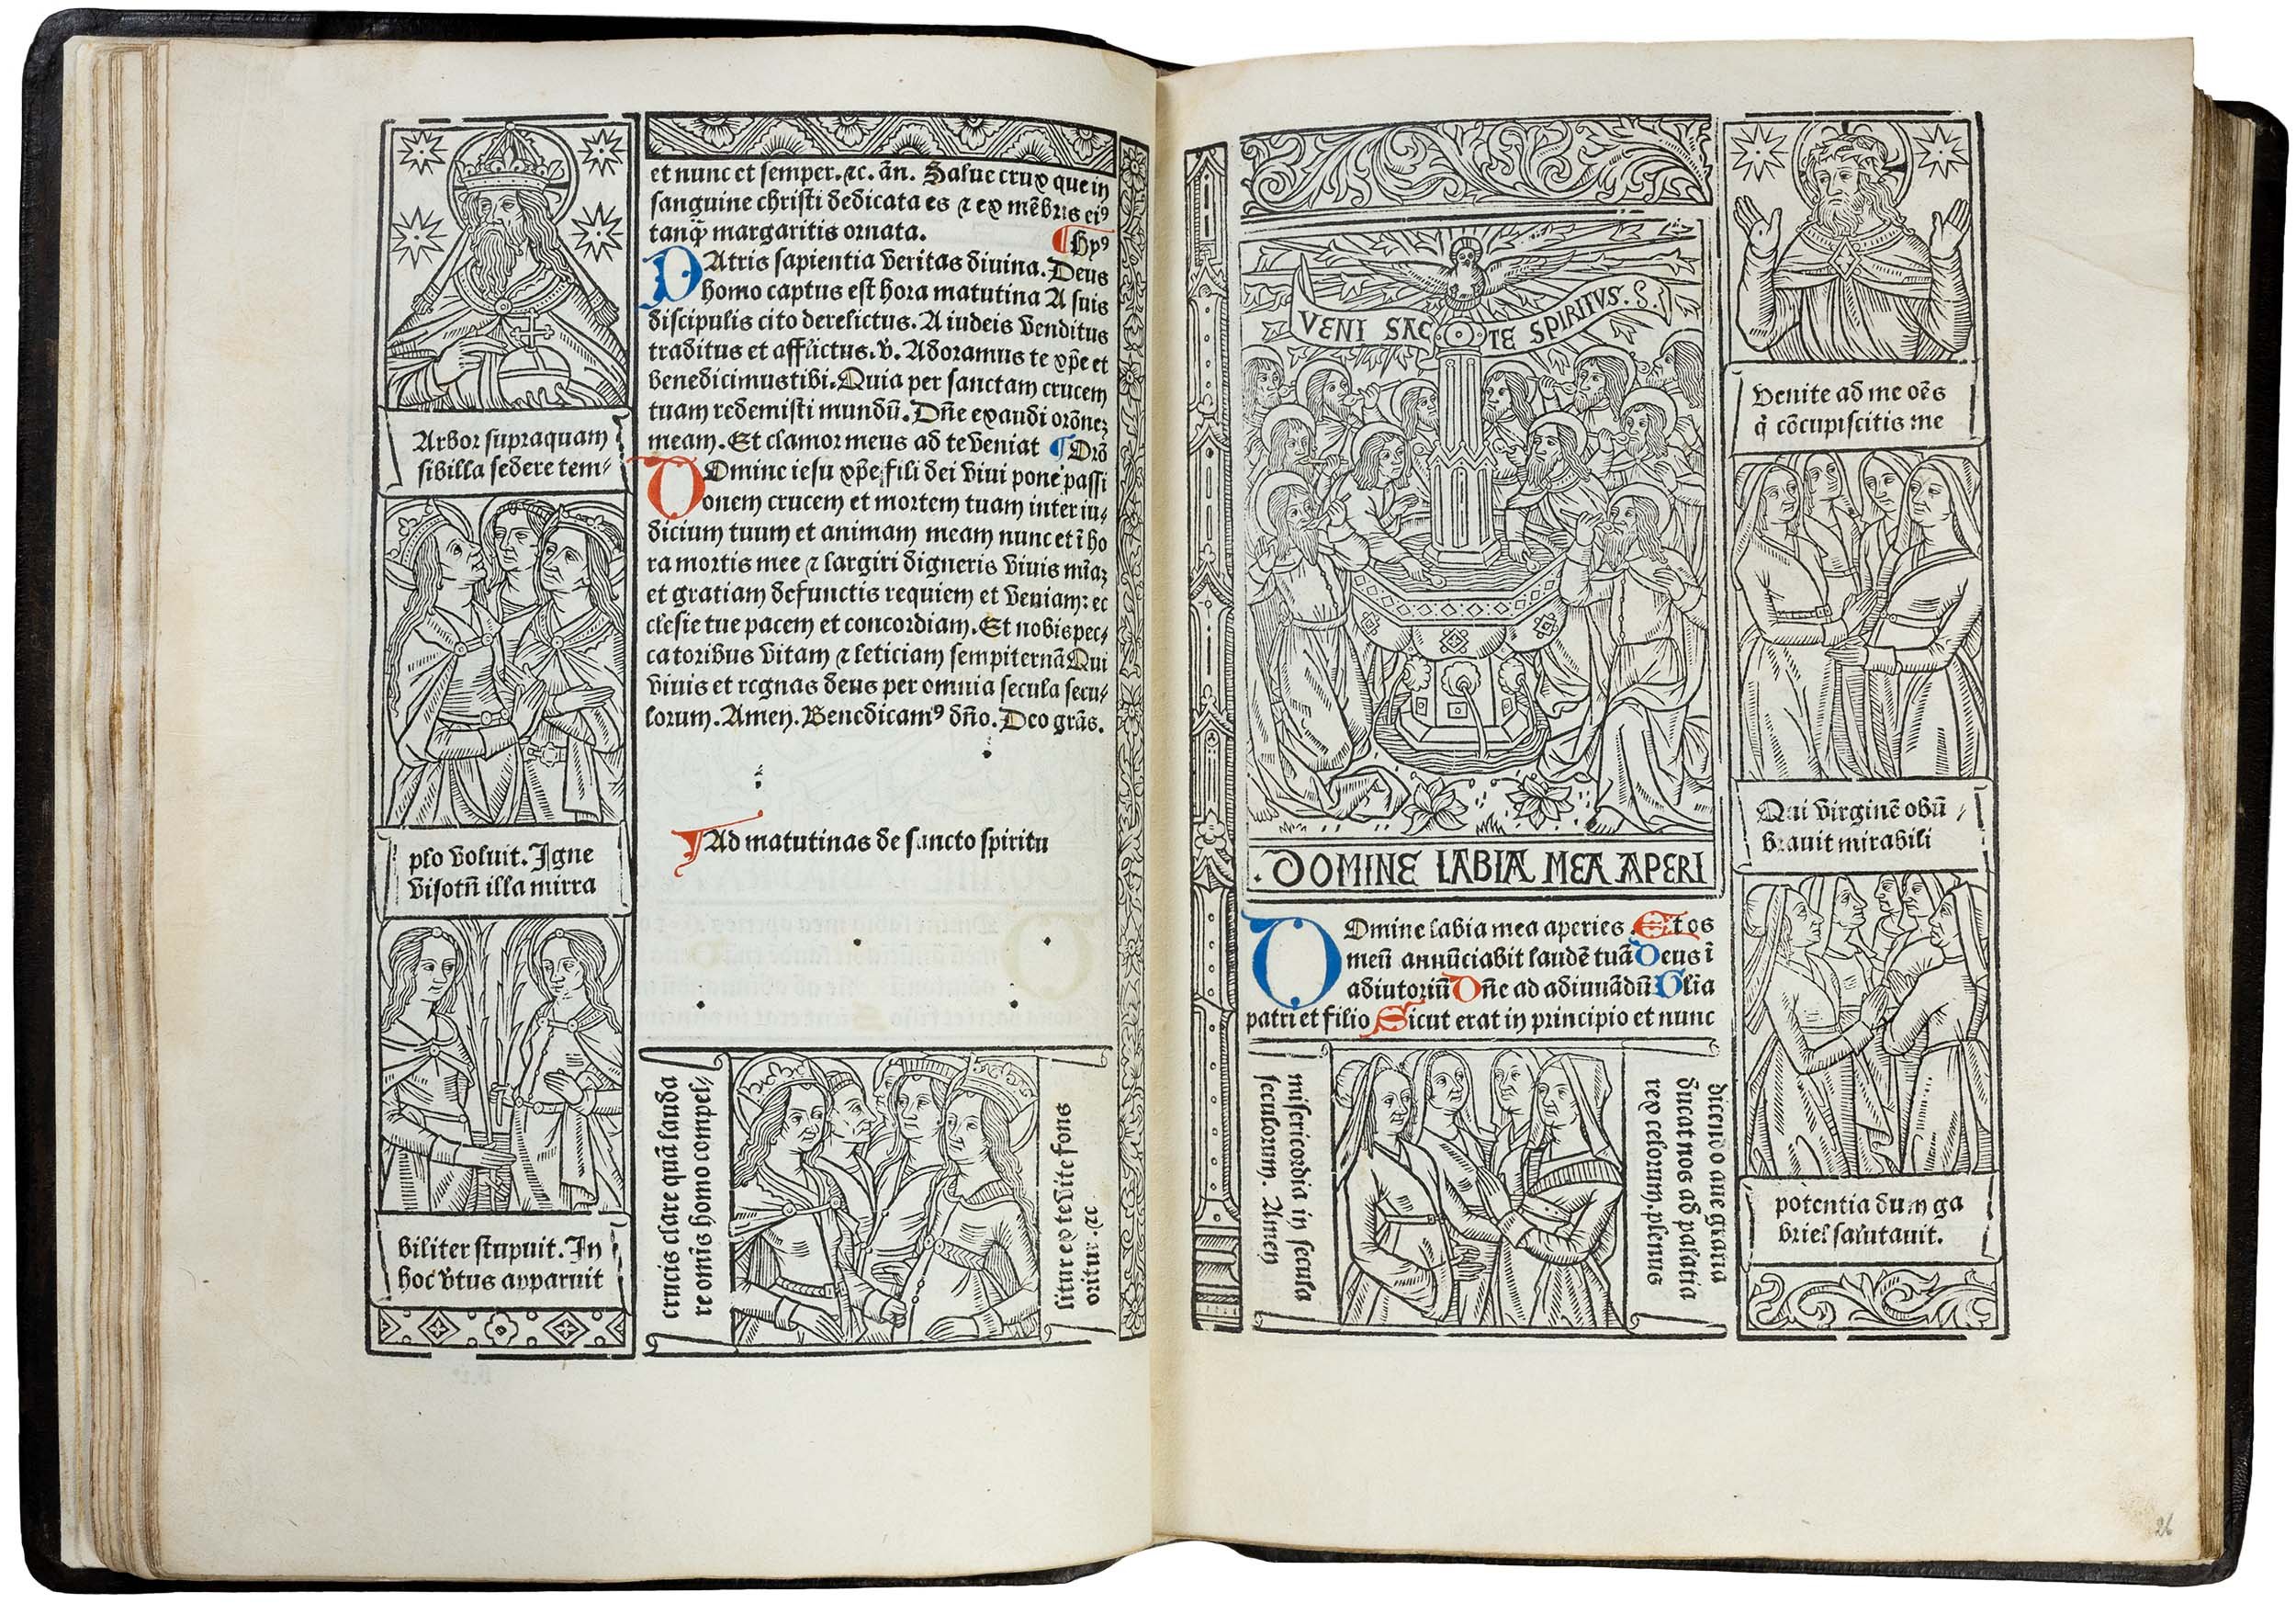 Grandes-heures-royales-verard-1488-1489-printed-book-of-hours-horae-bmv-28.jpg